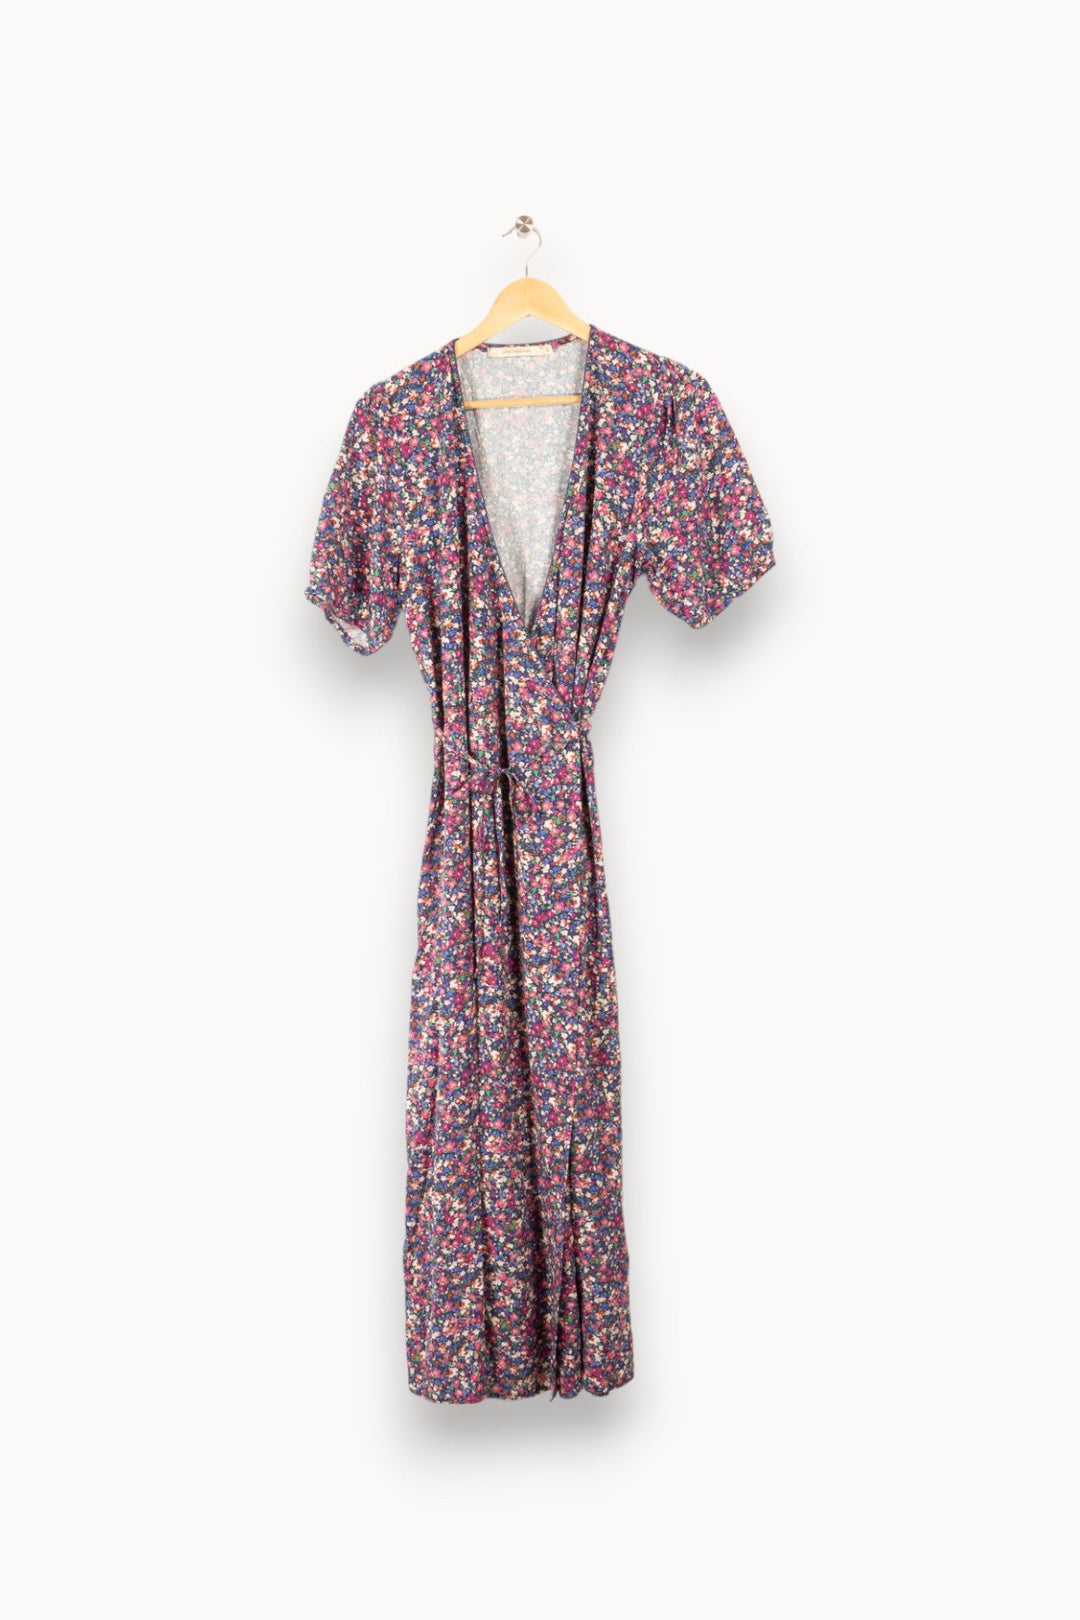 Robe multicolore à motifs de fleurs violettes, bleues et roses - Taille L / 40